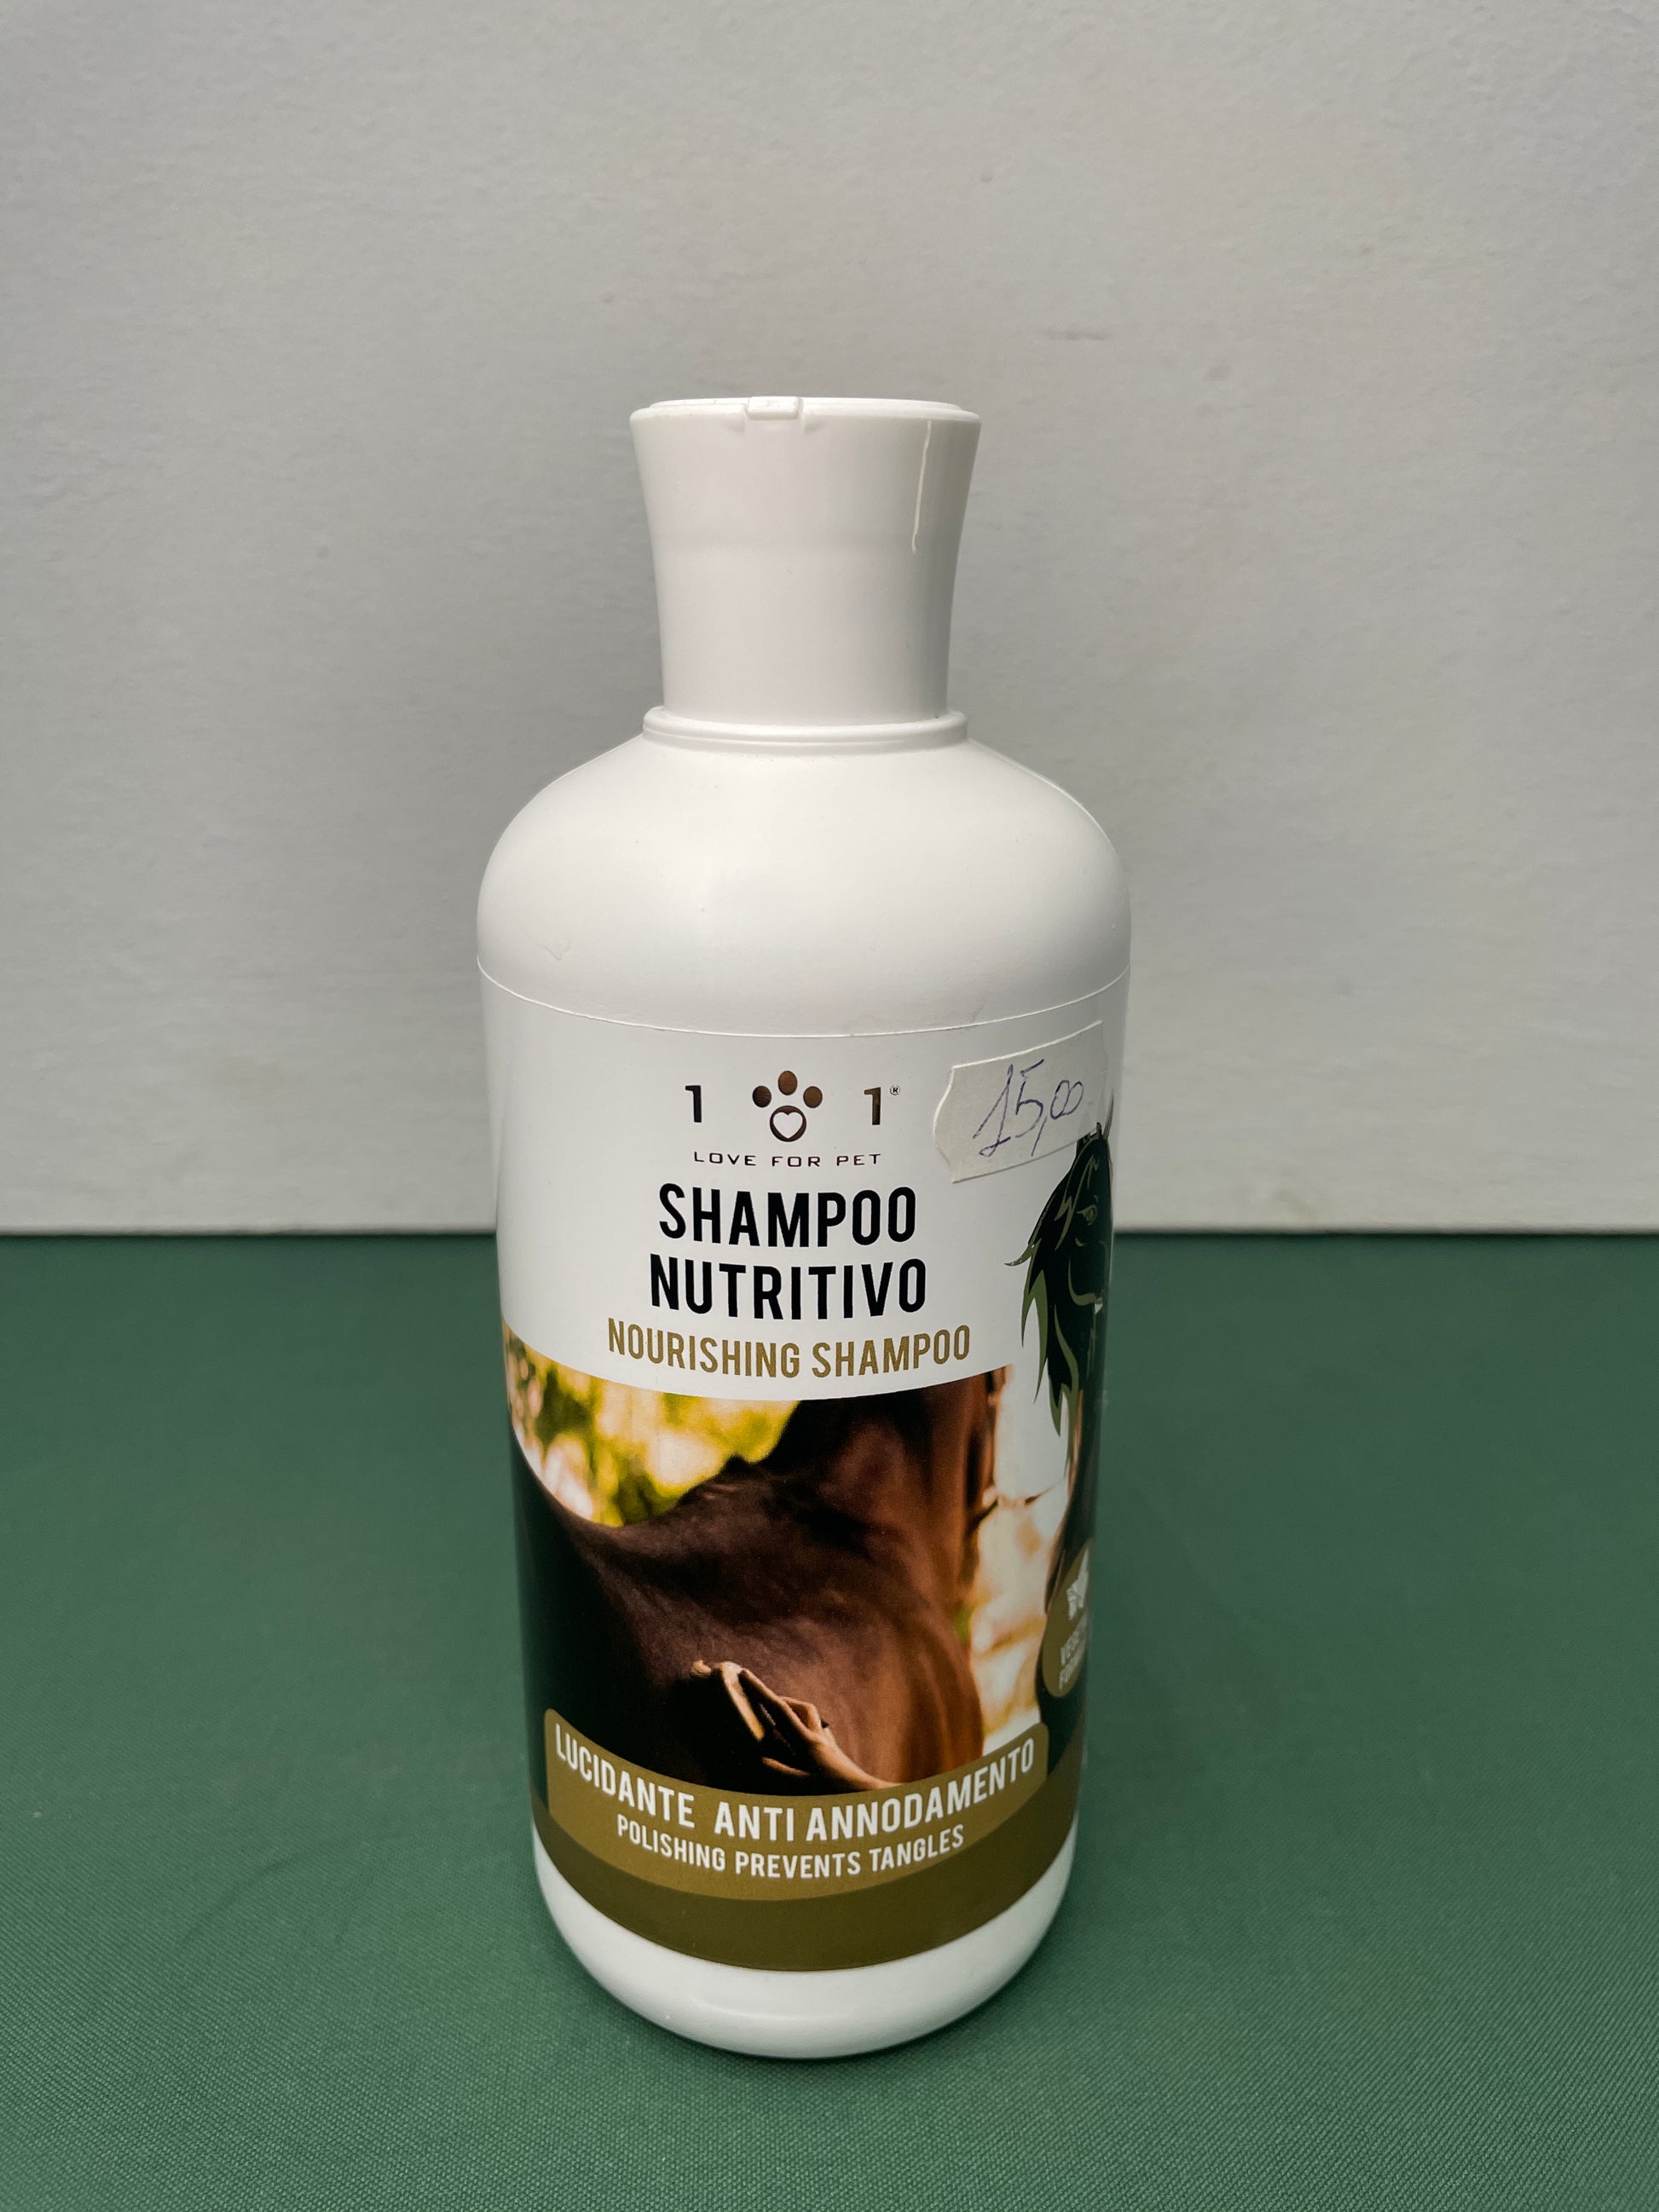 Linea 101 - Shampoo NUTRITIVO per la Criniera dei Cavalli con